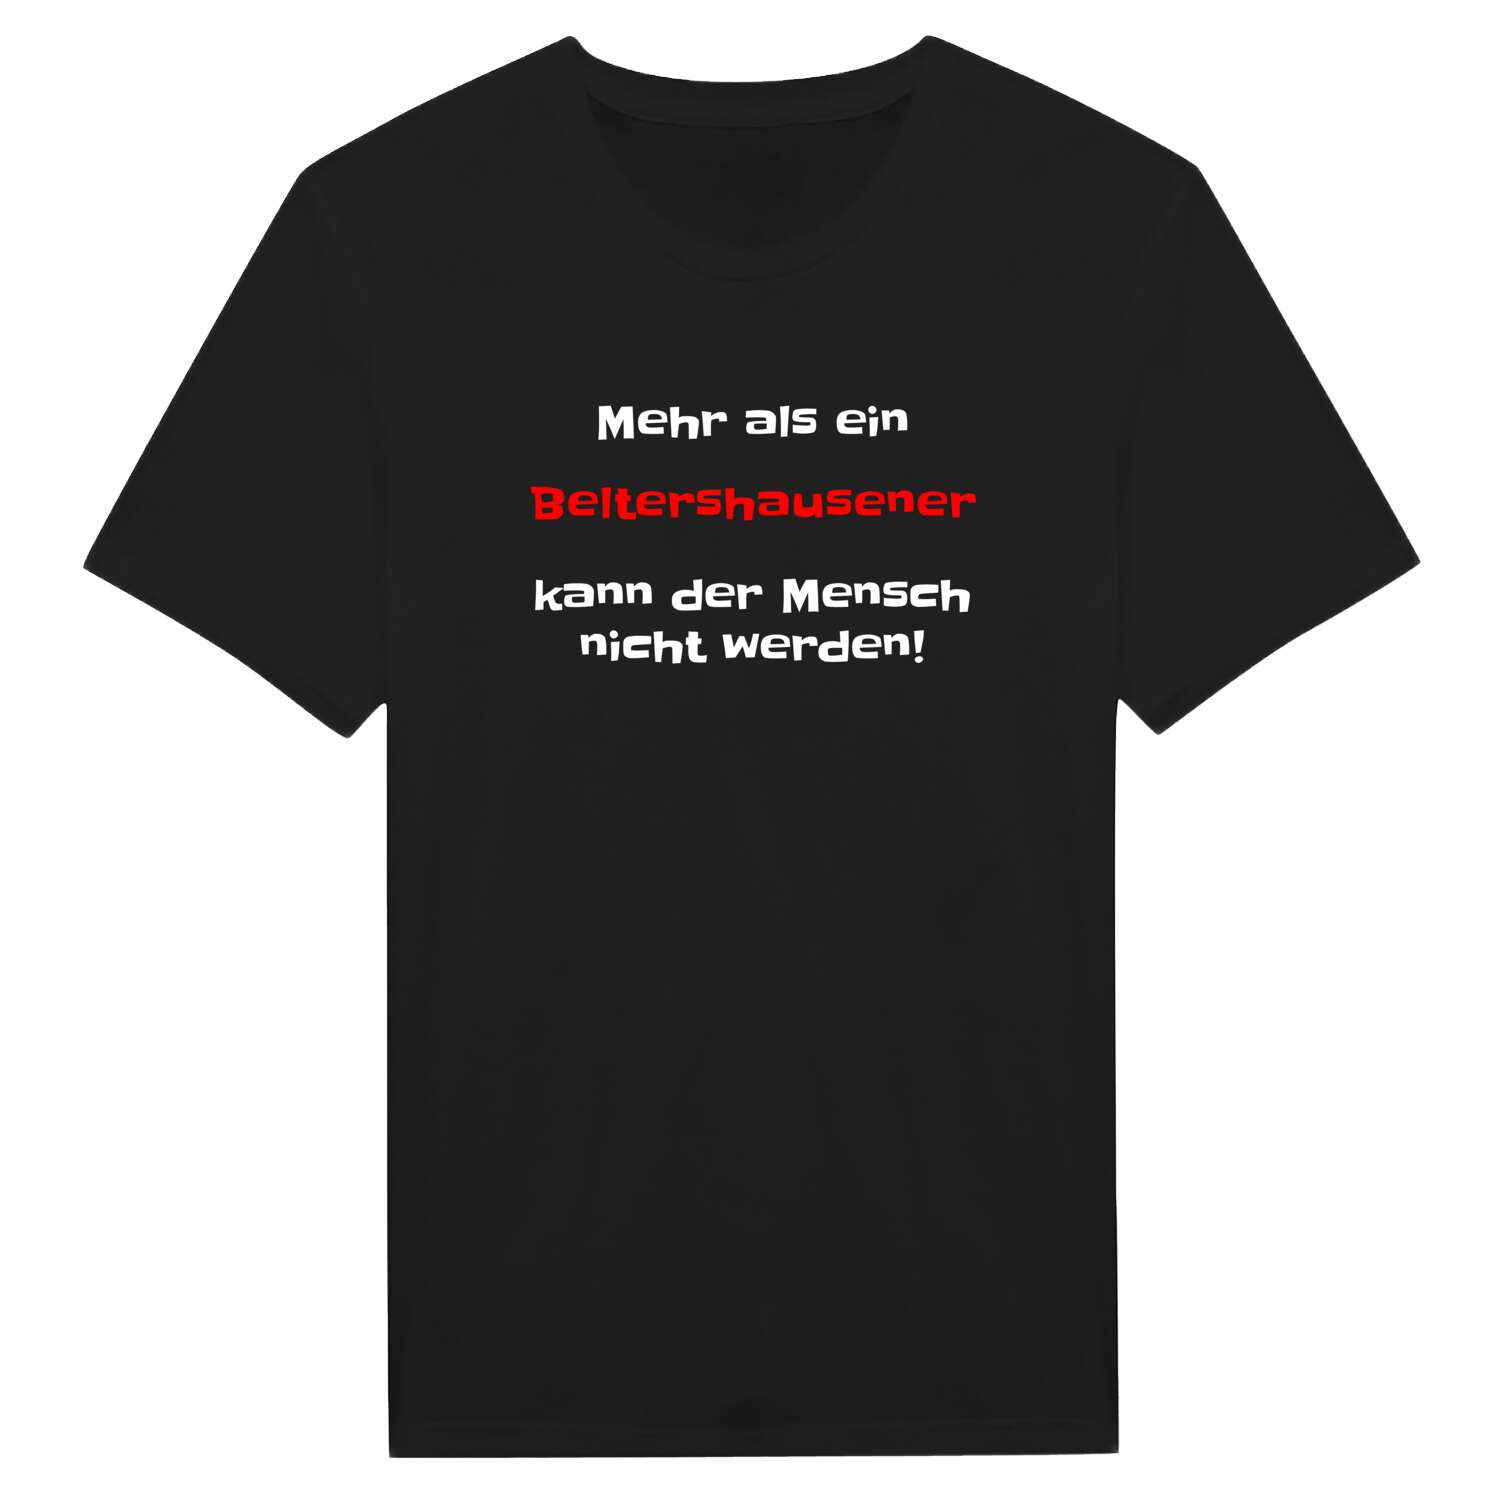 Beltershausen T-Shirt »Mehr als ein«